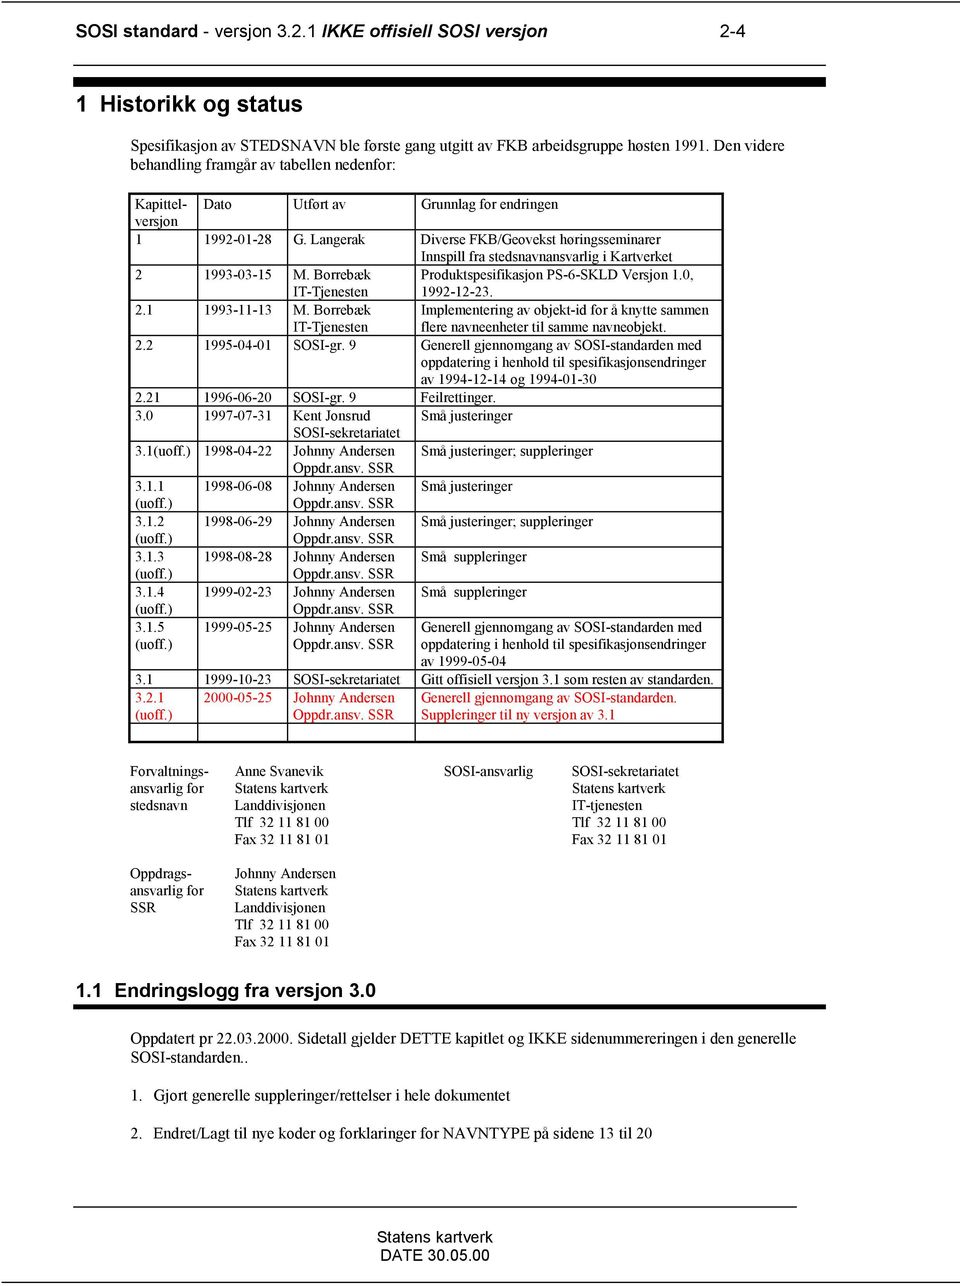 Langerak Diverse FKB/Geovekst høringsseminarer Innspill fra stedsnavnansvarlig i Kartverket 2 1993-03-15 M. Borrebæk IT-Tjenesten Produktspesifikasjon PS-6-SKLD Versjon 1.0, 1992-12-23. 2.1 1993-11-13 M.